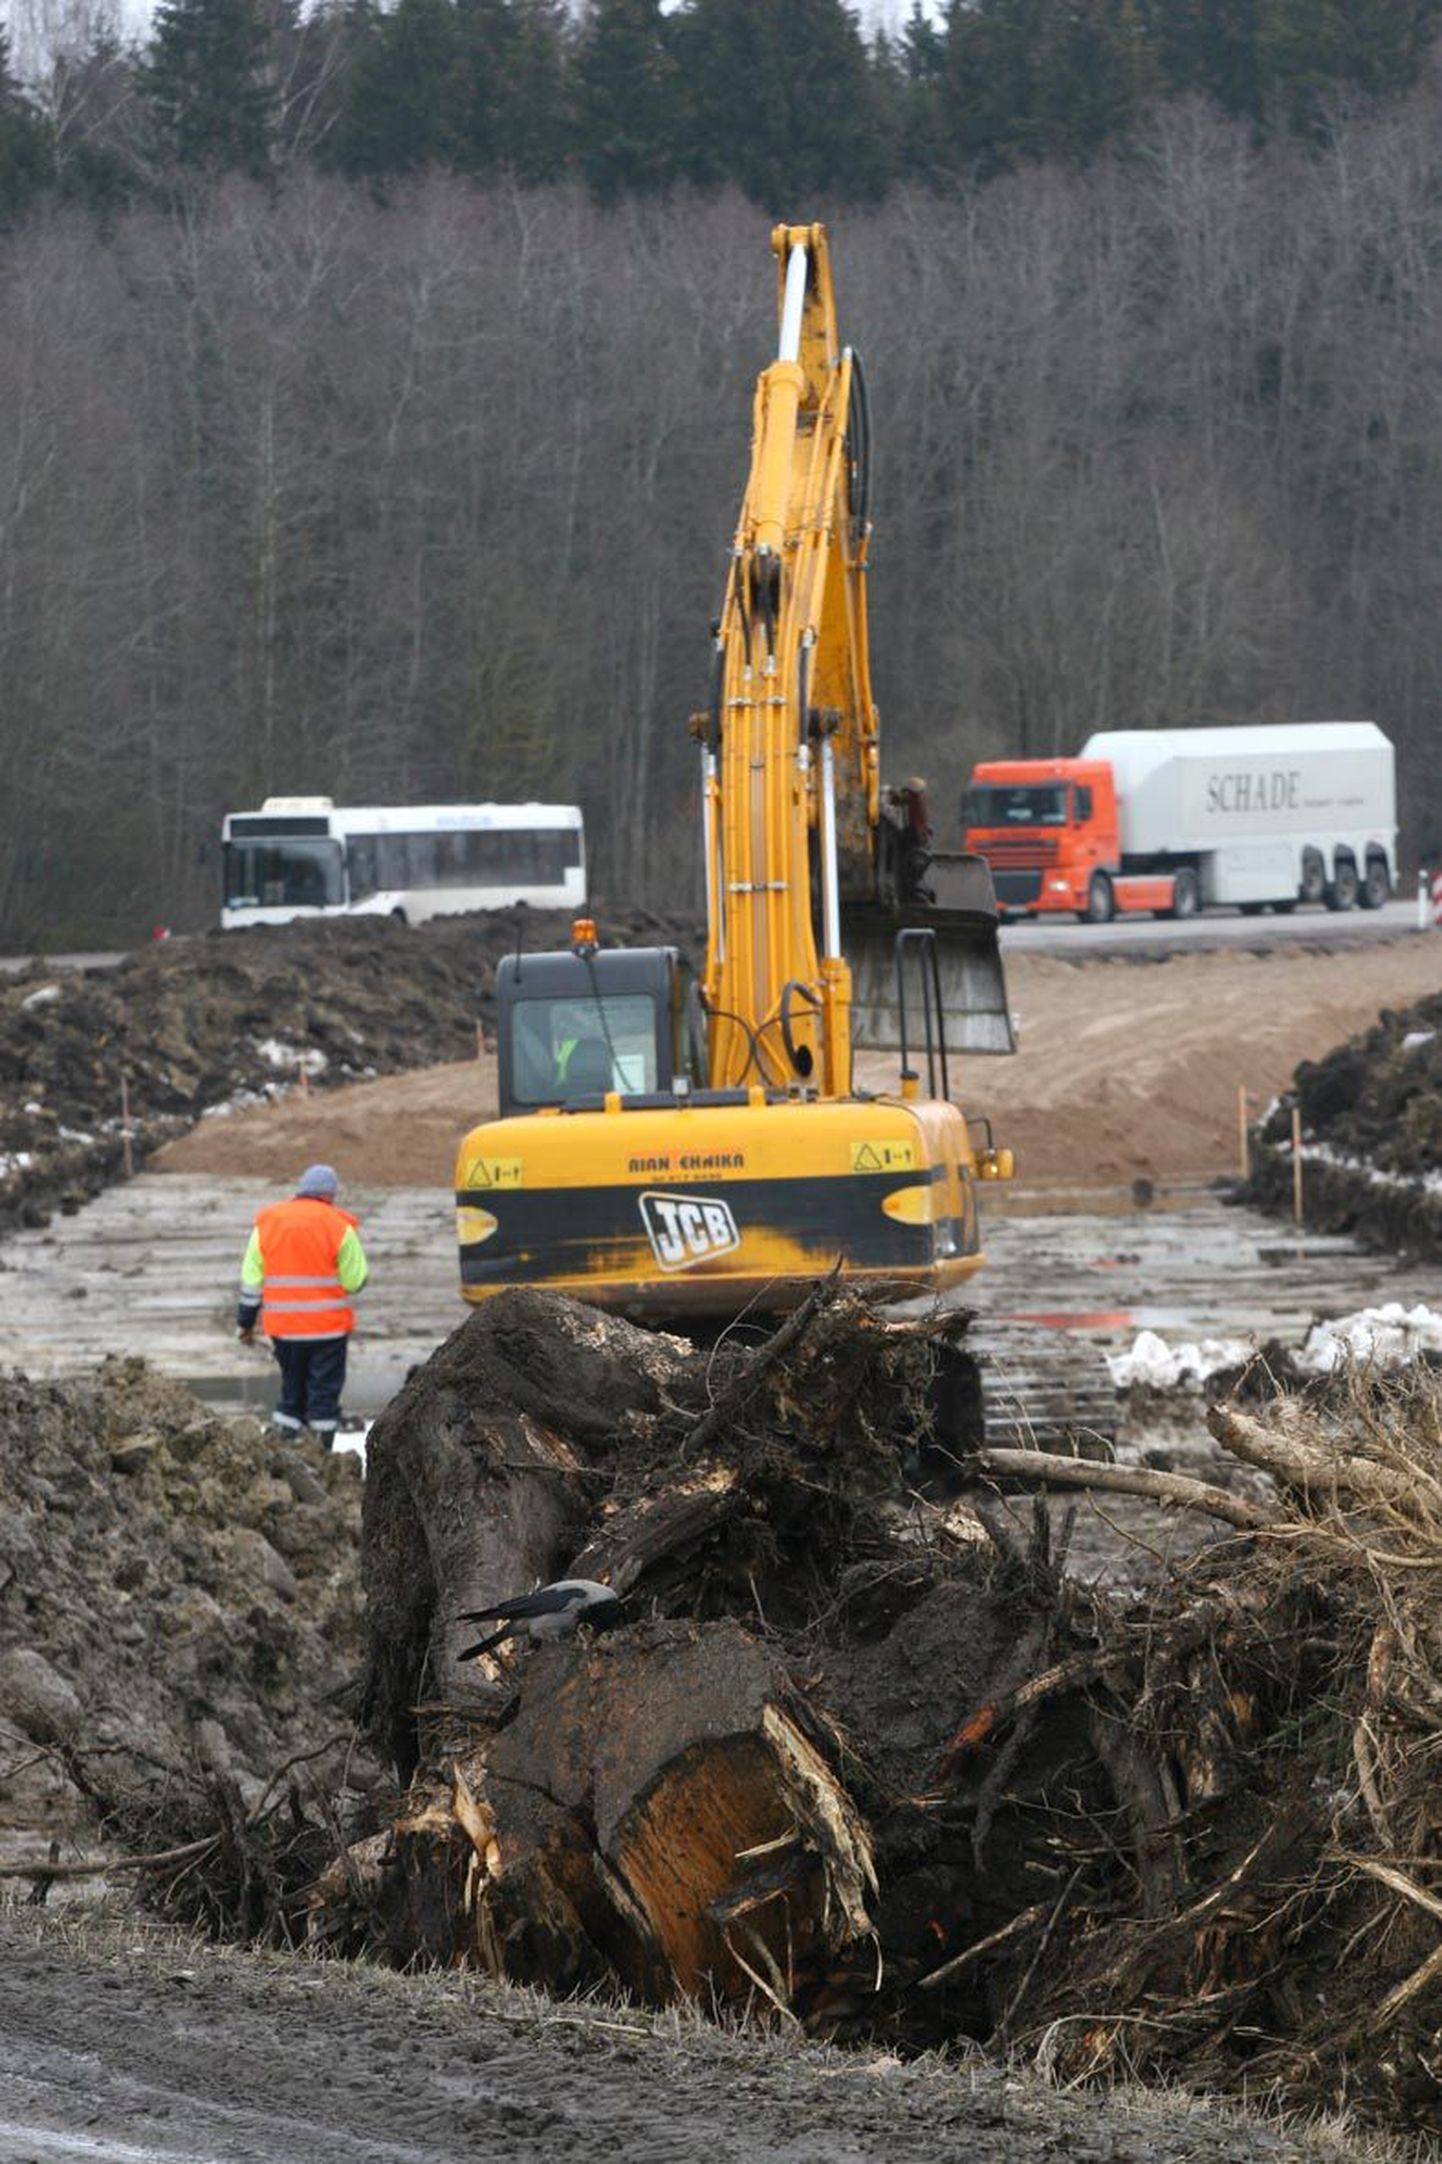 Et Rakvere-Pärnu maantee kõige ohtlikum teelõik saaks ohutumaks, tuleb tee äärest maha võtta üle kolmesaja puu.